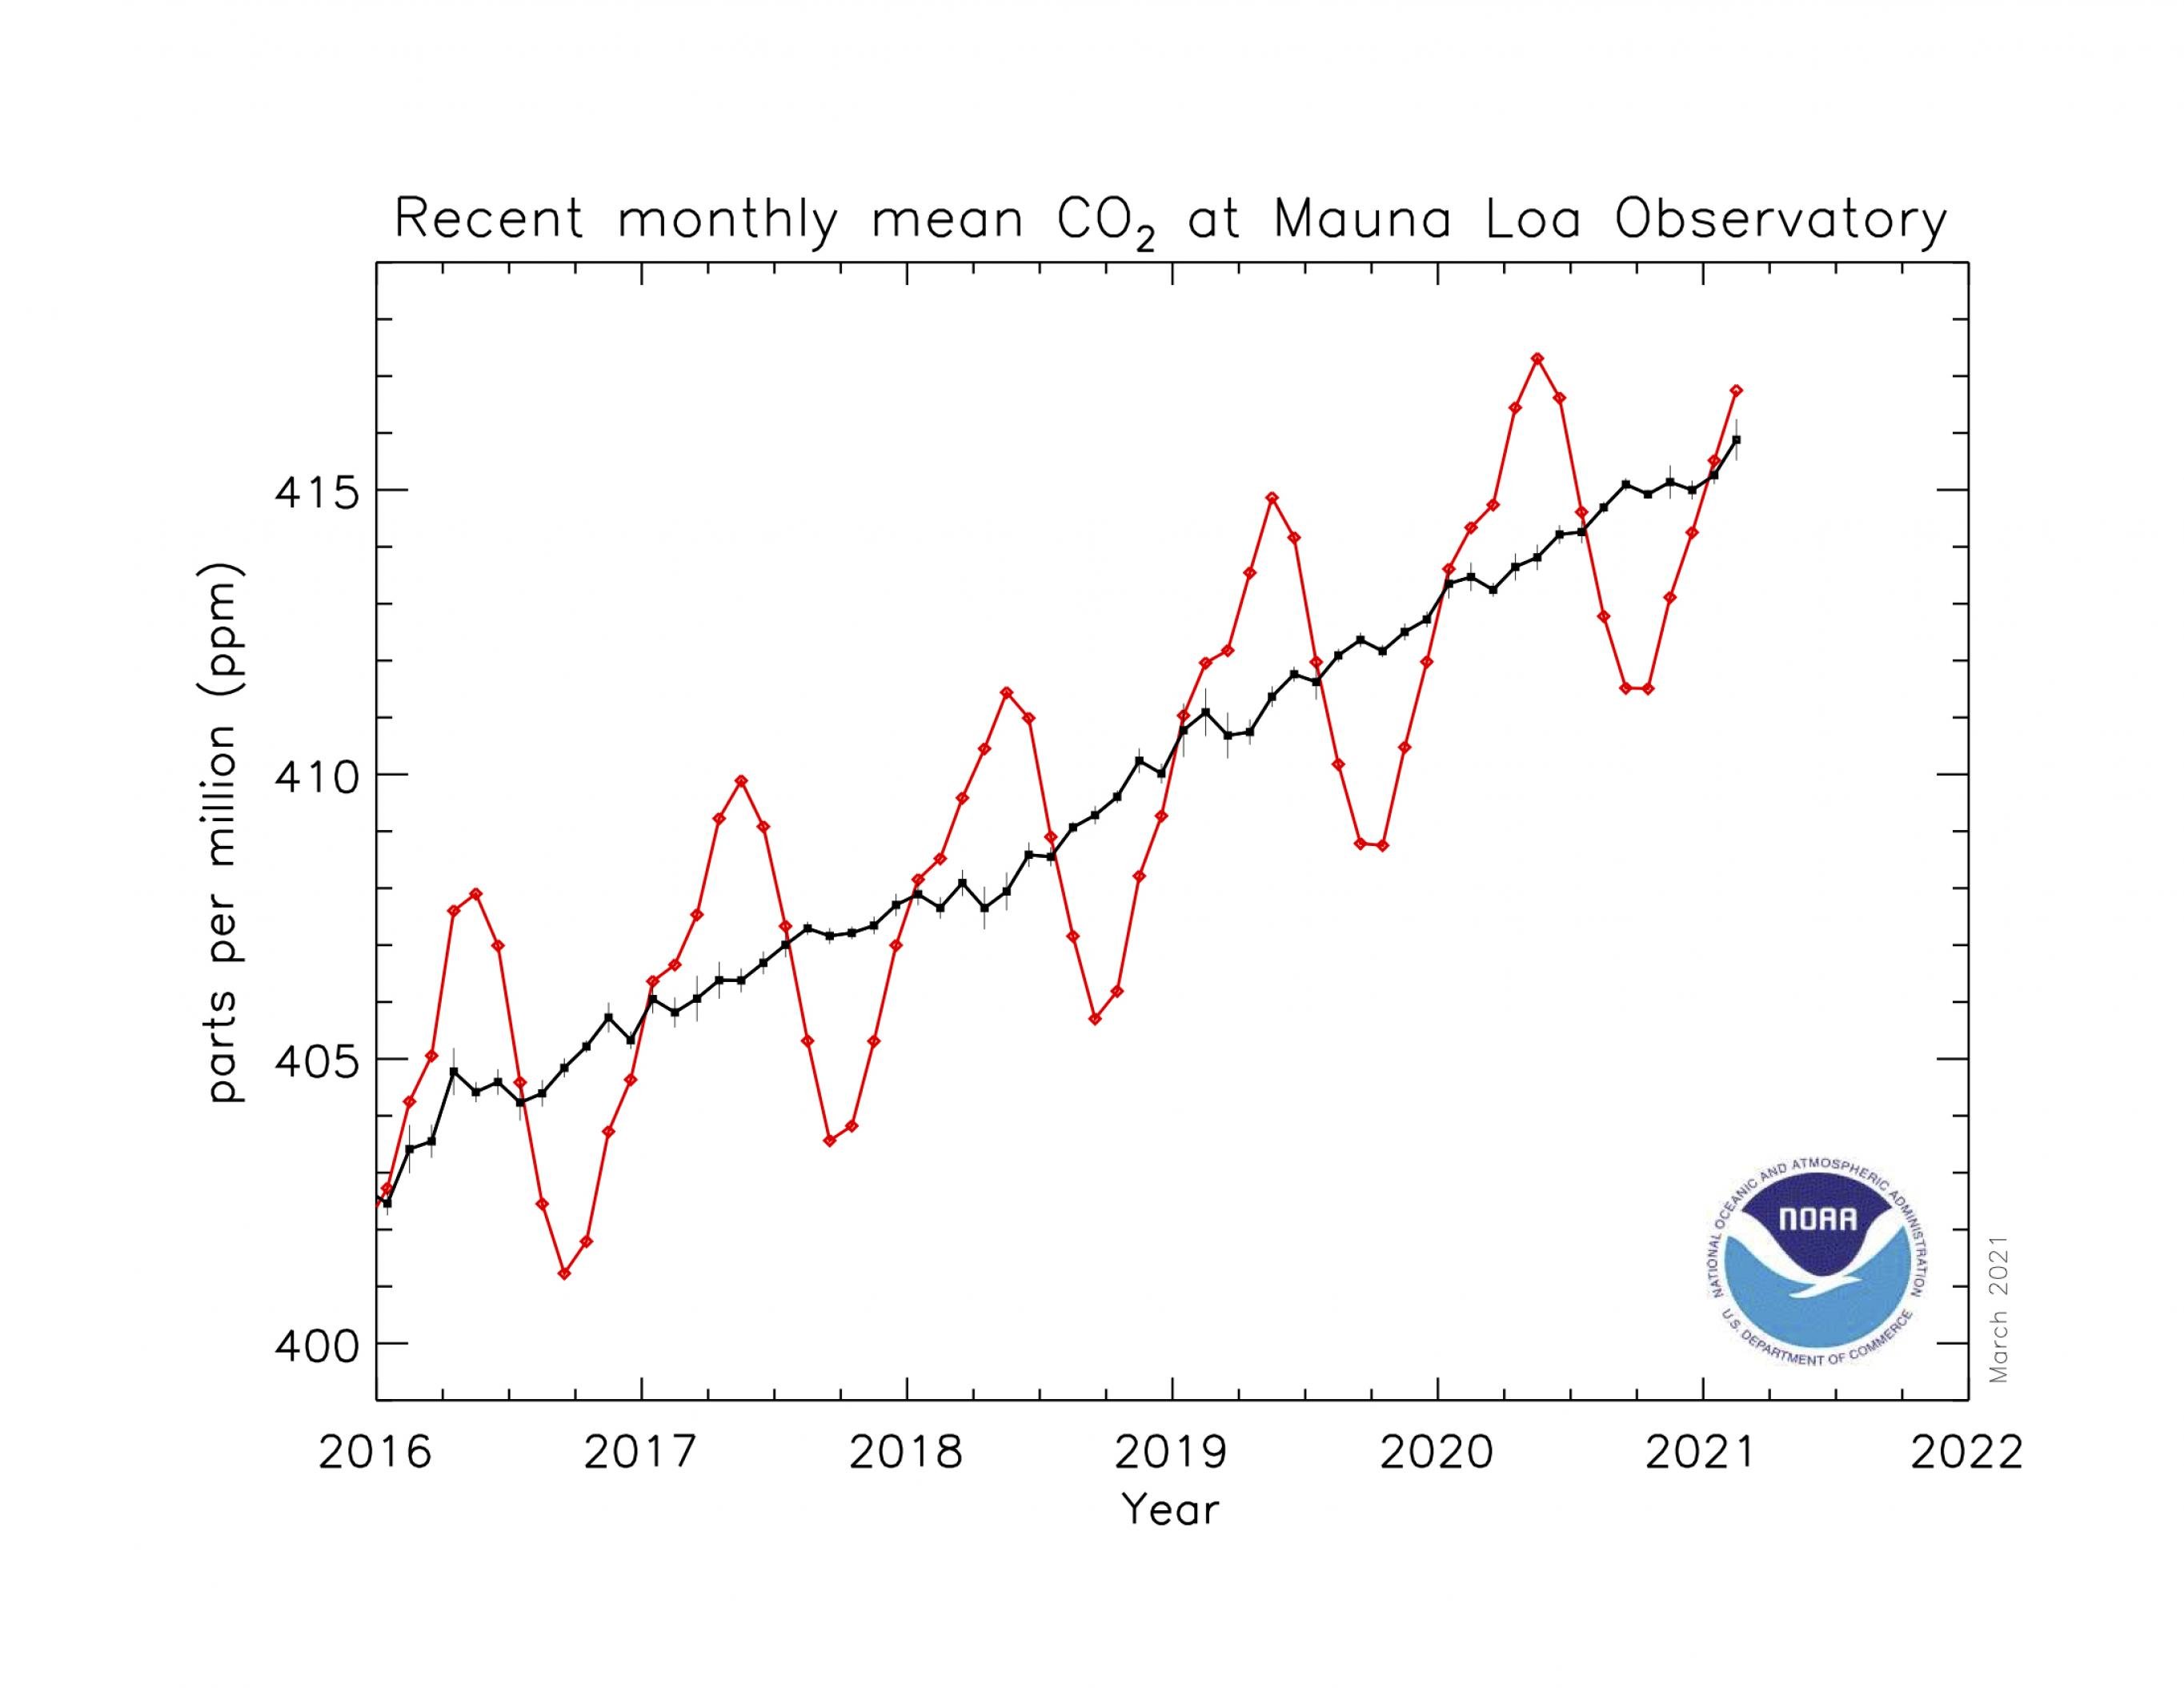 Graphik mit CO2-Werten seit 2016 – von knapp über 400 ppm stieg der Wert in dieser Zeit stetig Richtung 420ppm.